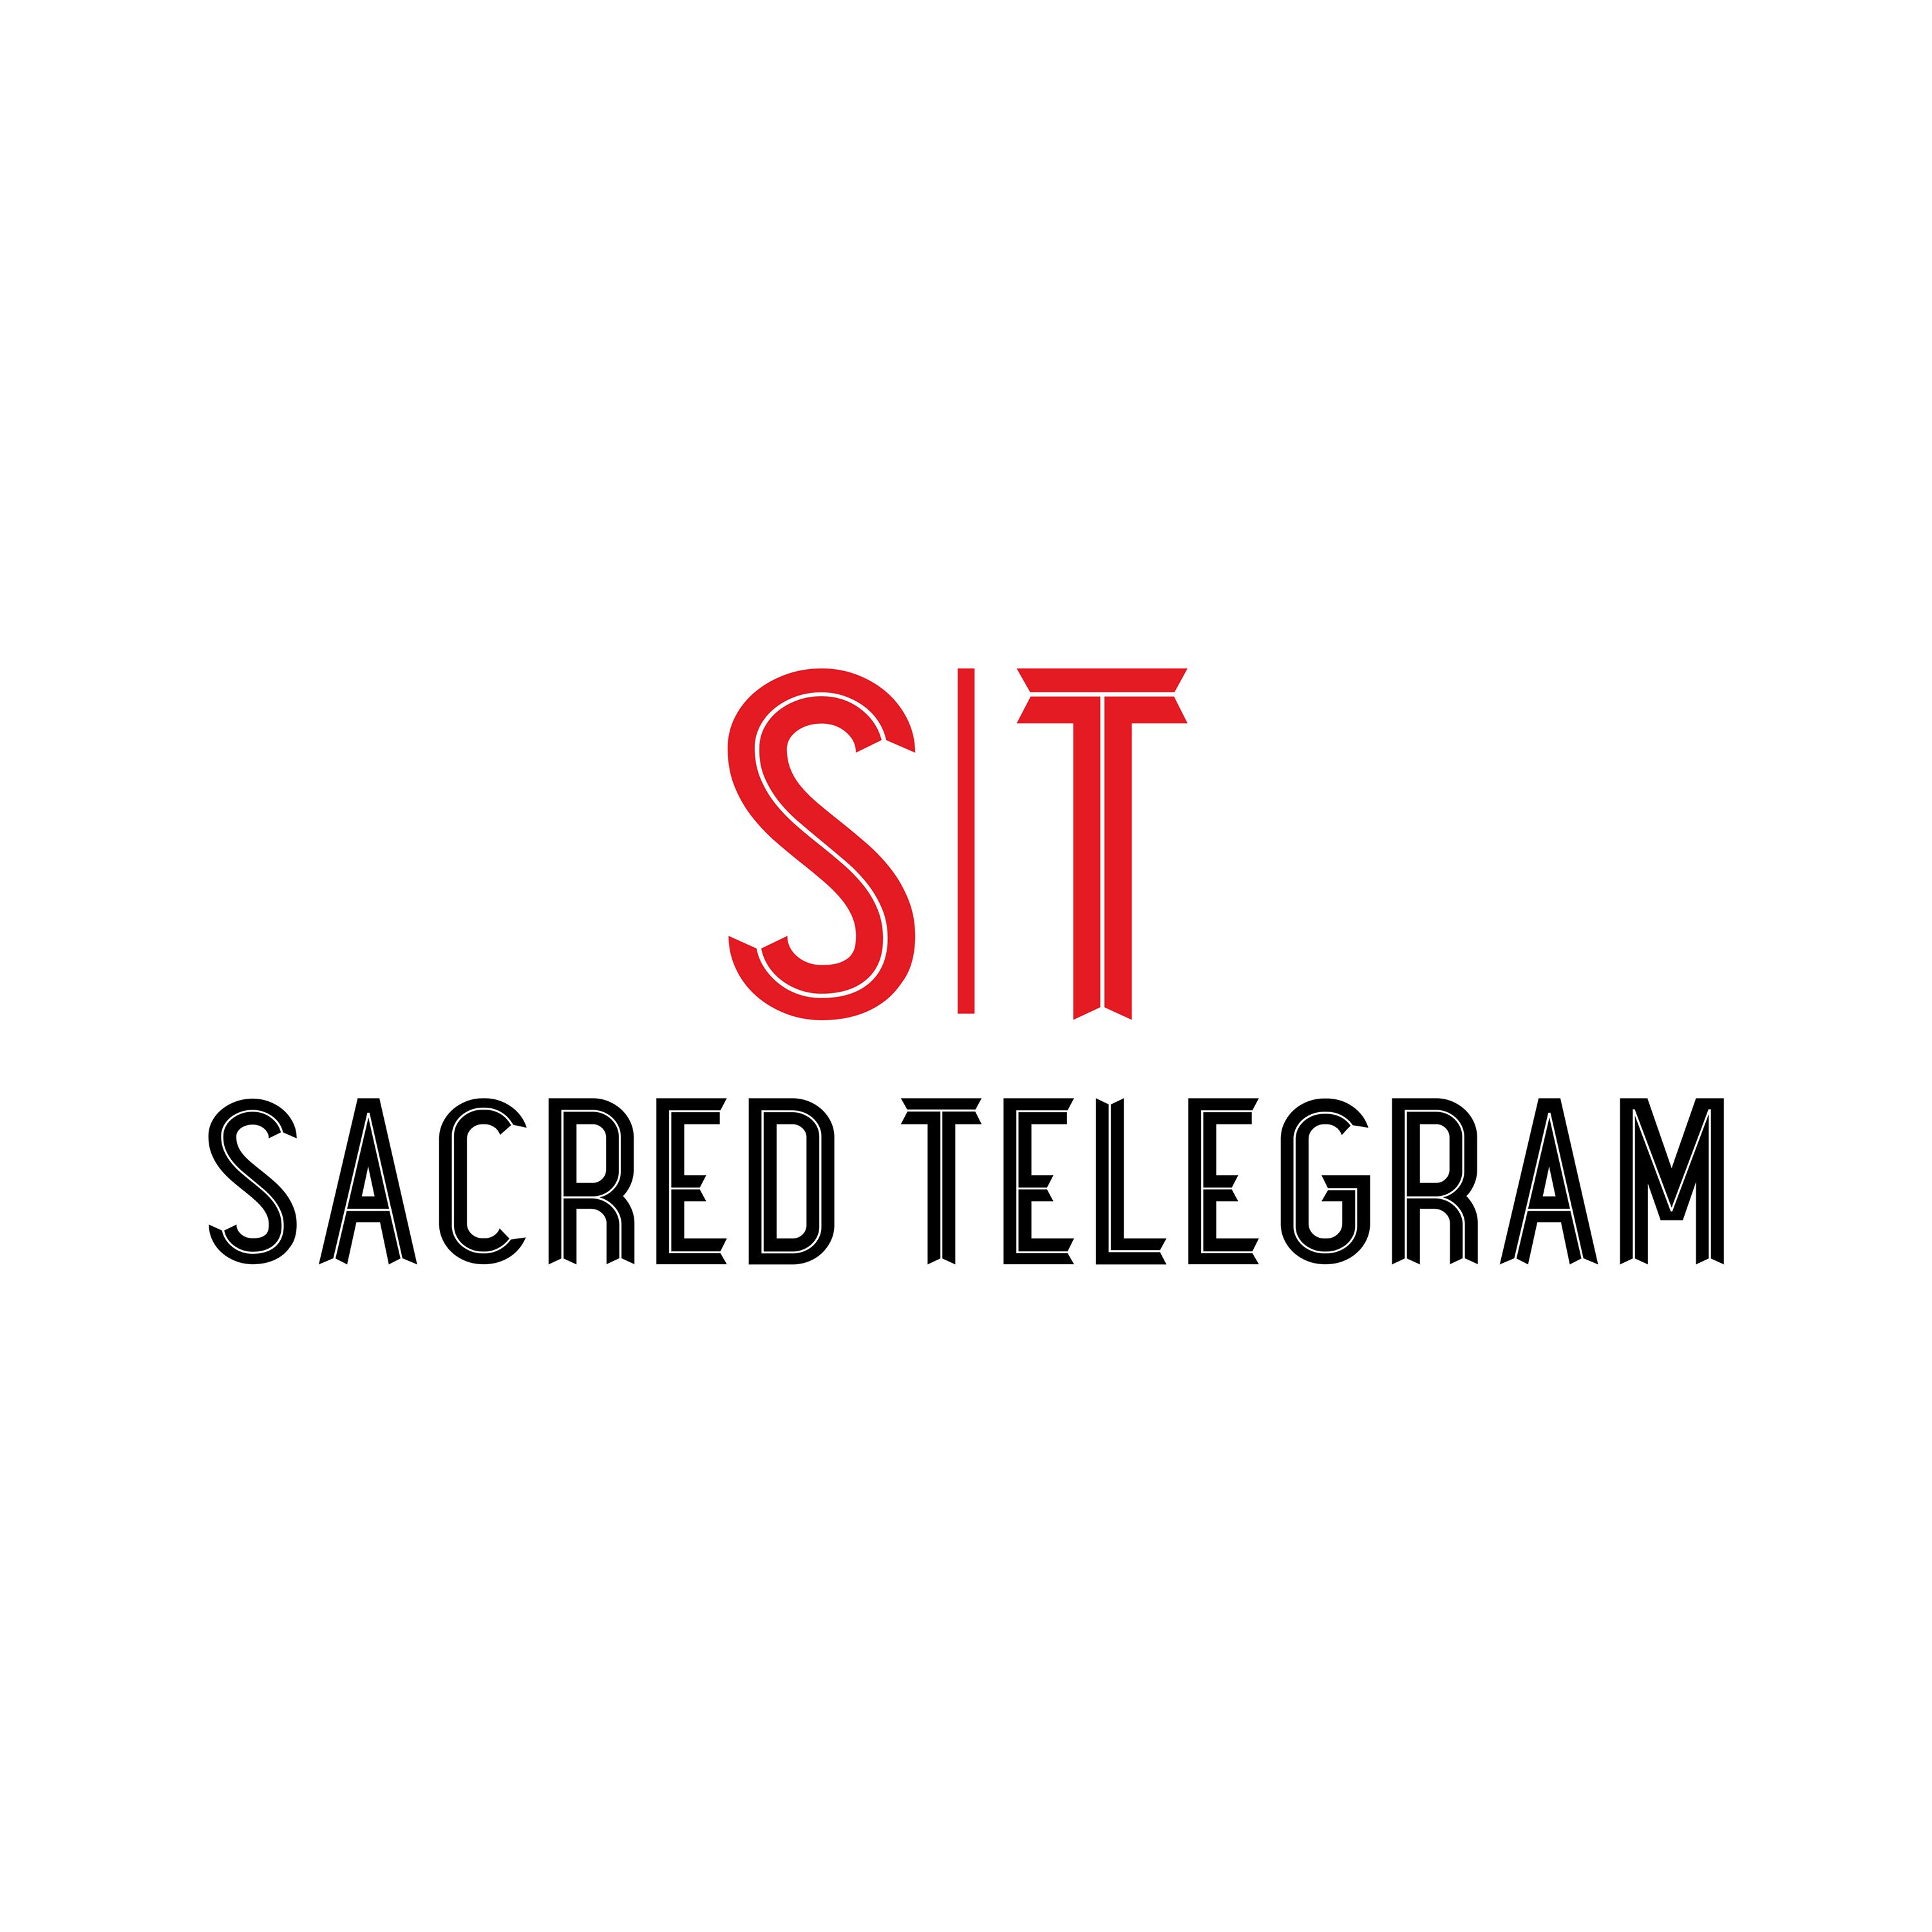 Sacred Telegram